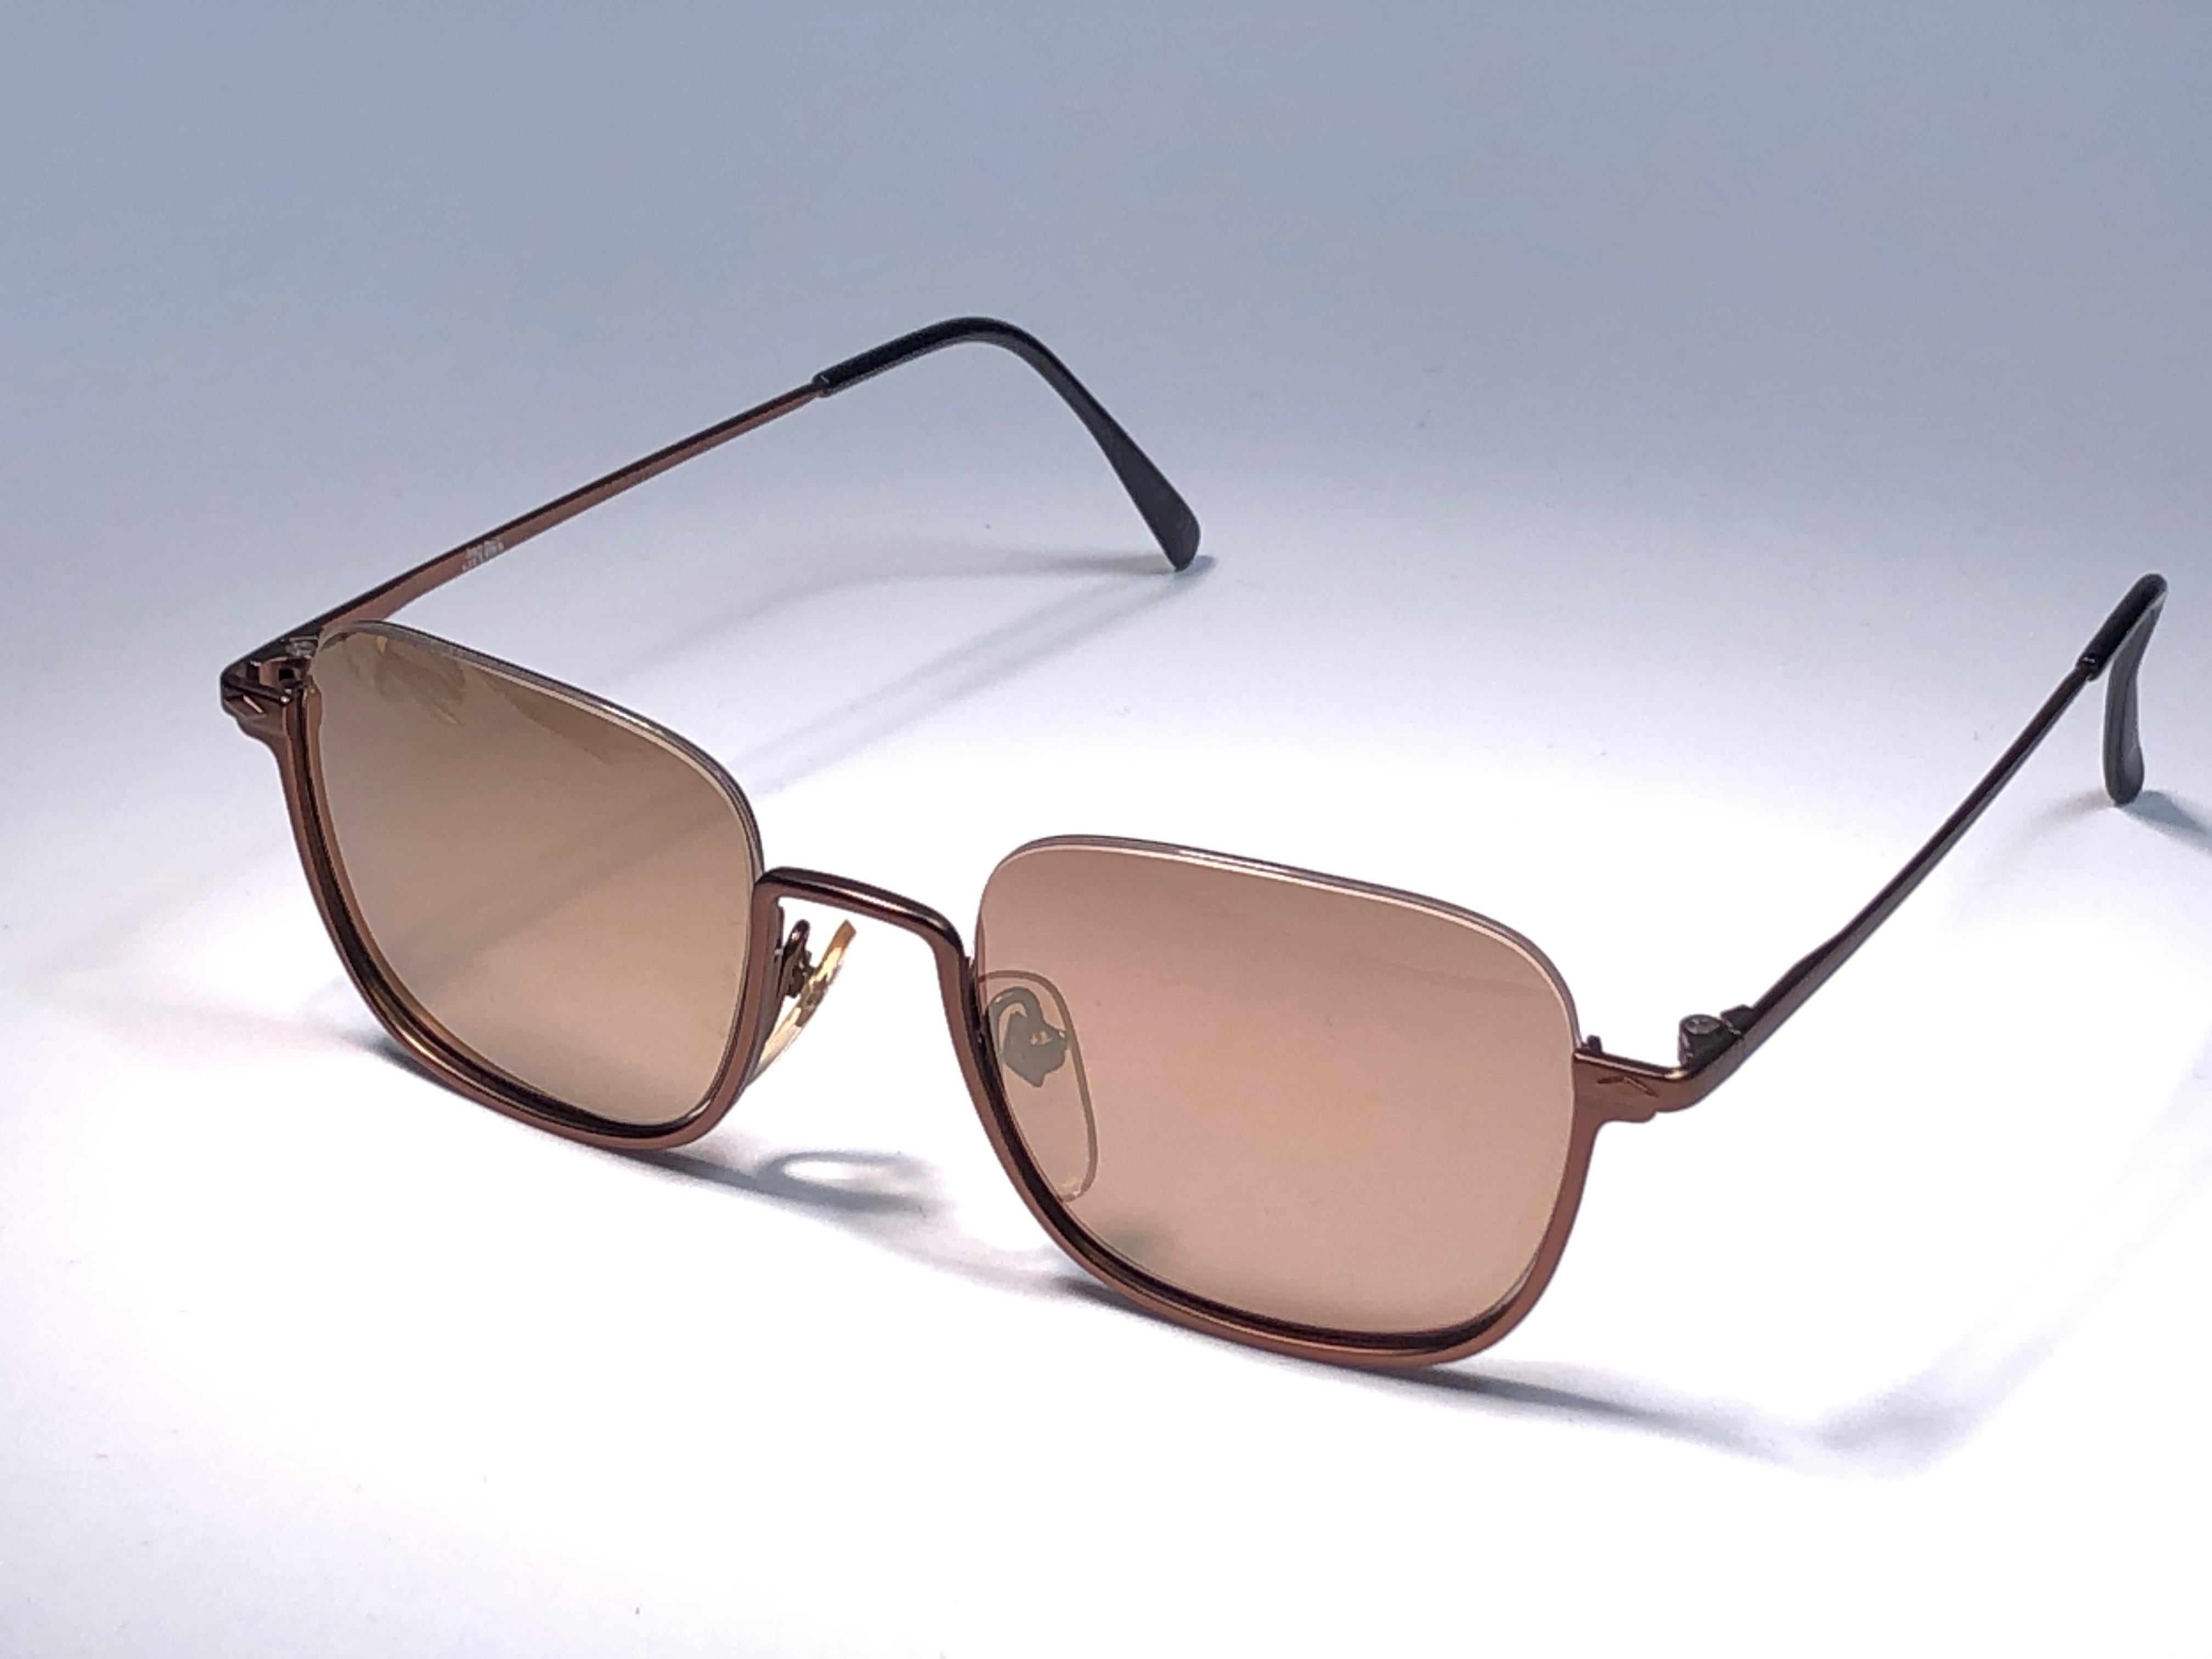 Neu Jean Paul Gaultier mittelgroße Sonnenbrille mit halbem Rahmen.
Goldfarbene, verspiegelte Gläser, die einen tragbaren JPG-Look vervollständigen.

Erstaunliches Design mit starken und doch komplizierten Details.
Entwurf und Herstellung in den